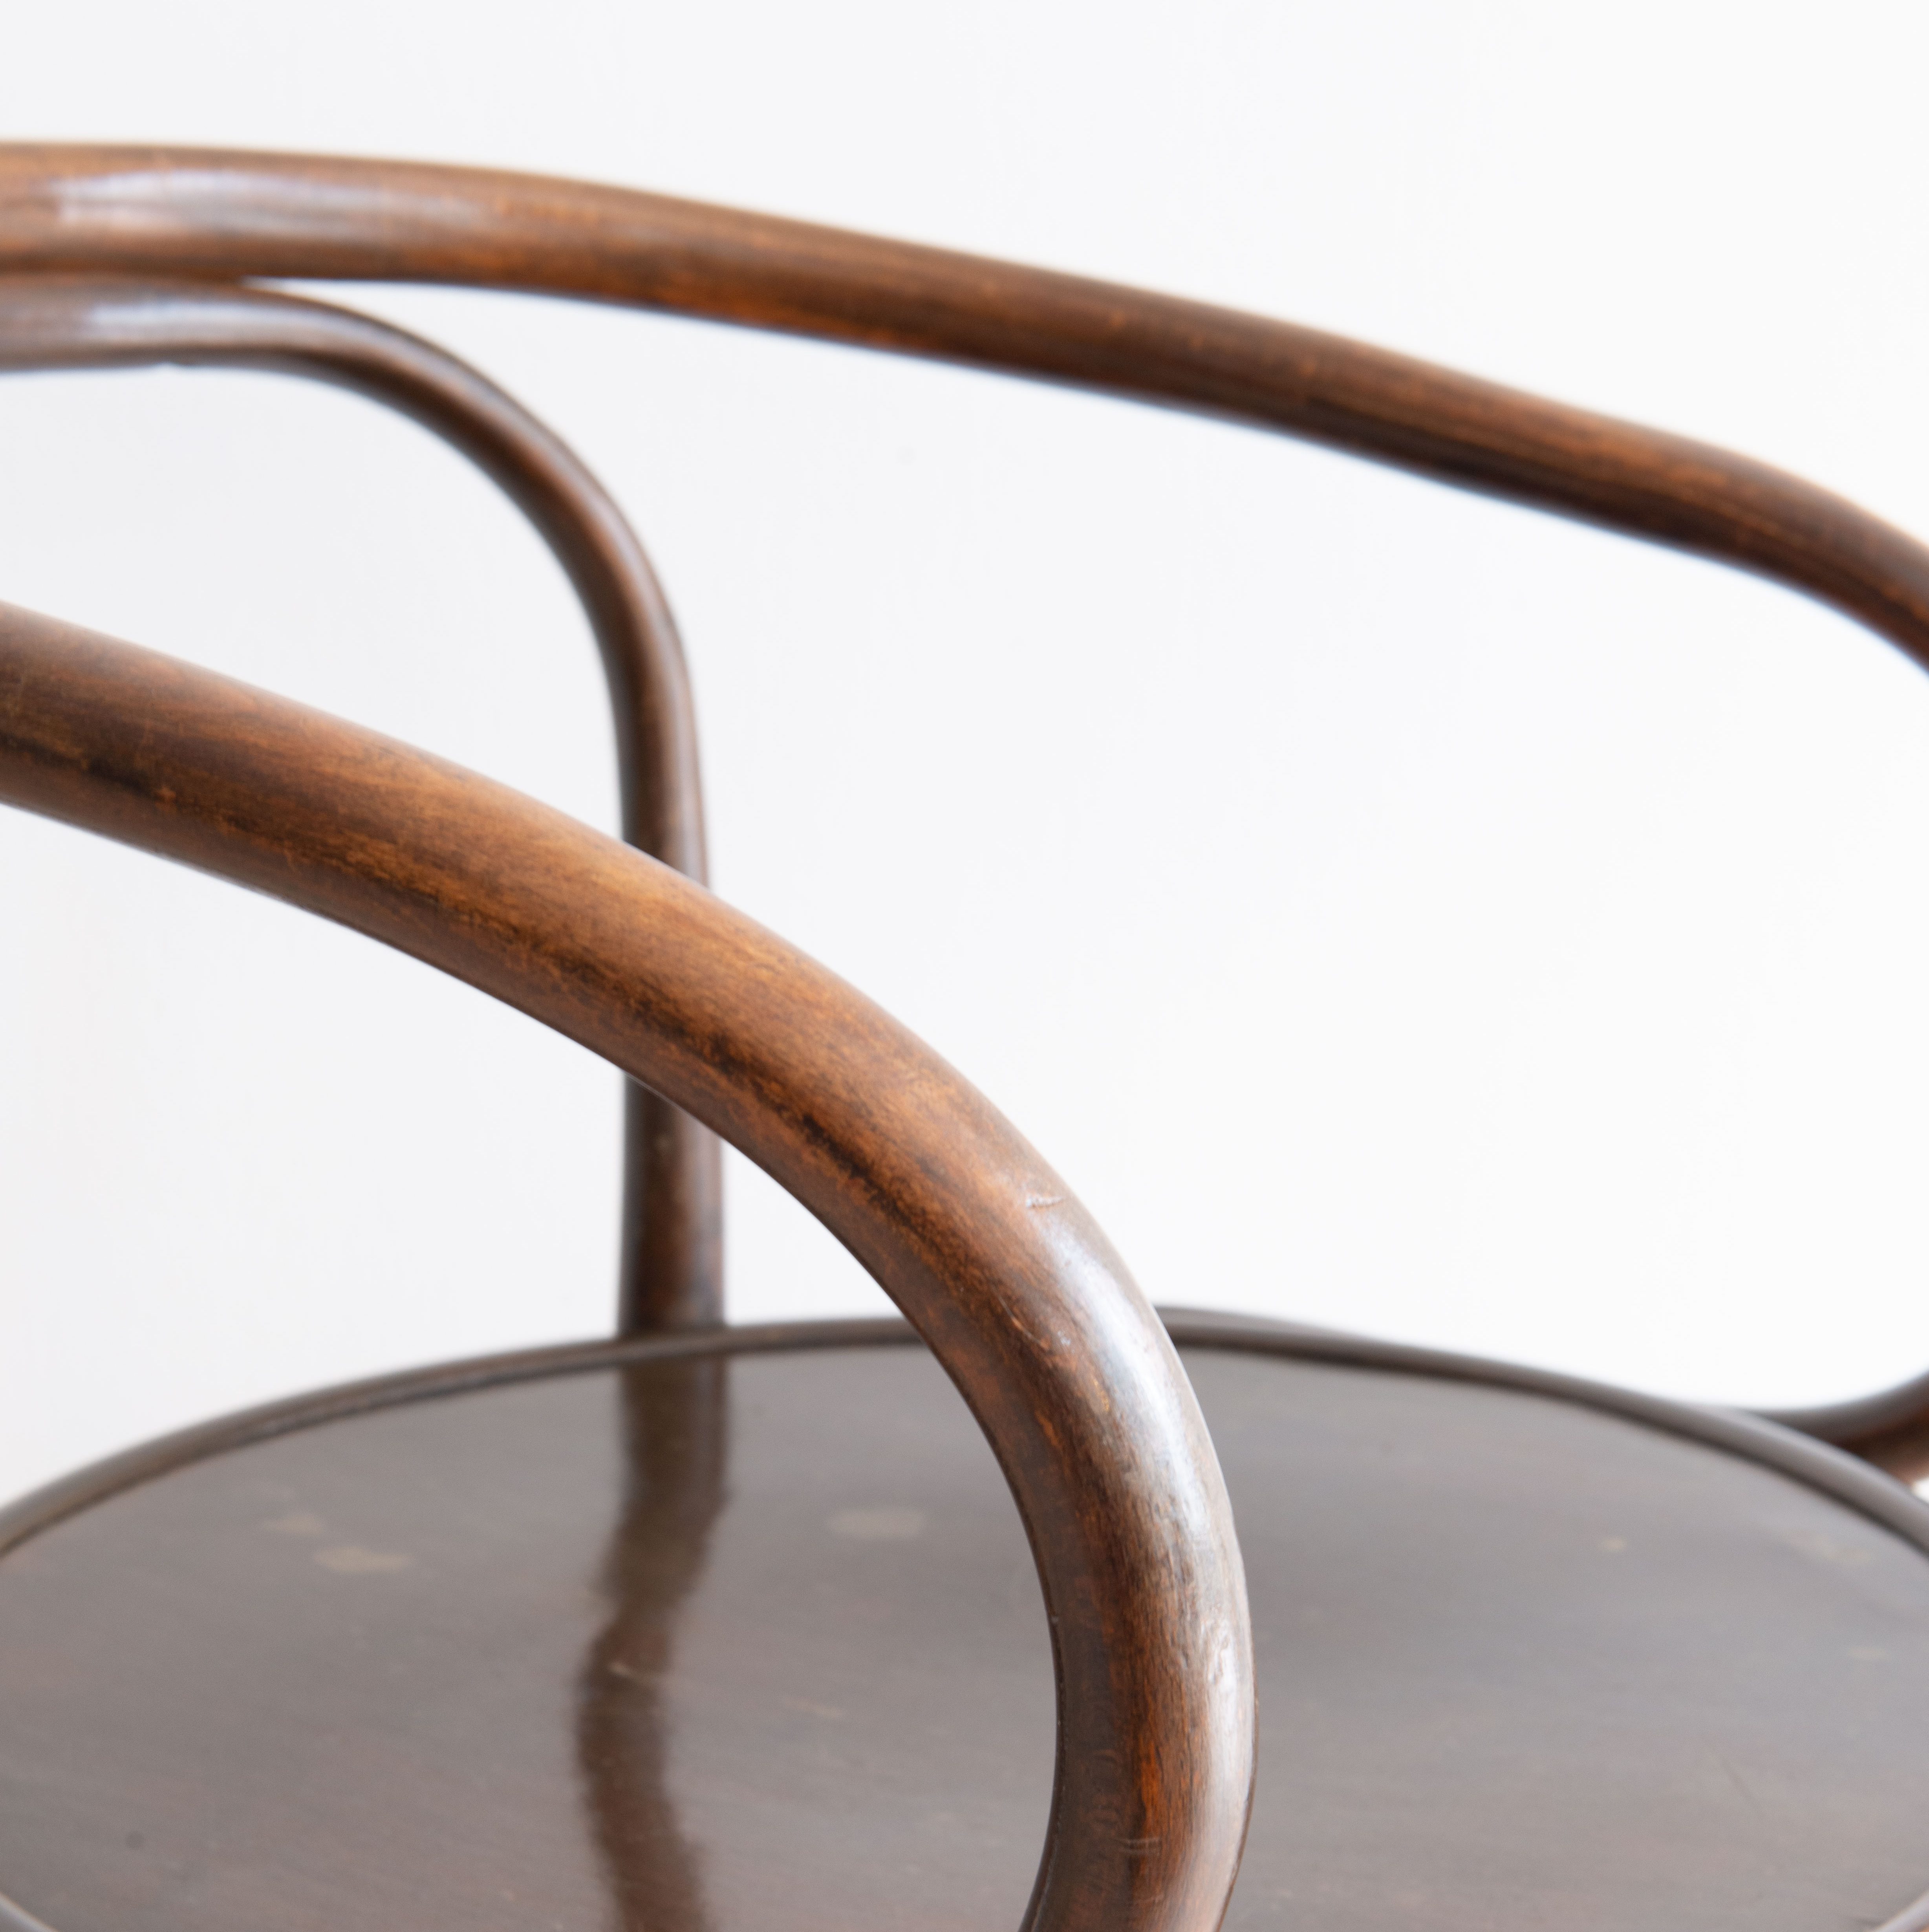 Horgenglarus Bentwood Carver Chair. Produced by Horgenglarus, in Switzerland in the 1940s. Available at heyday möbel. Grubenstrasse 19, 8045 Zurich, Schweiz.